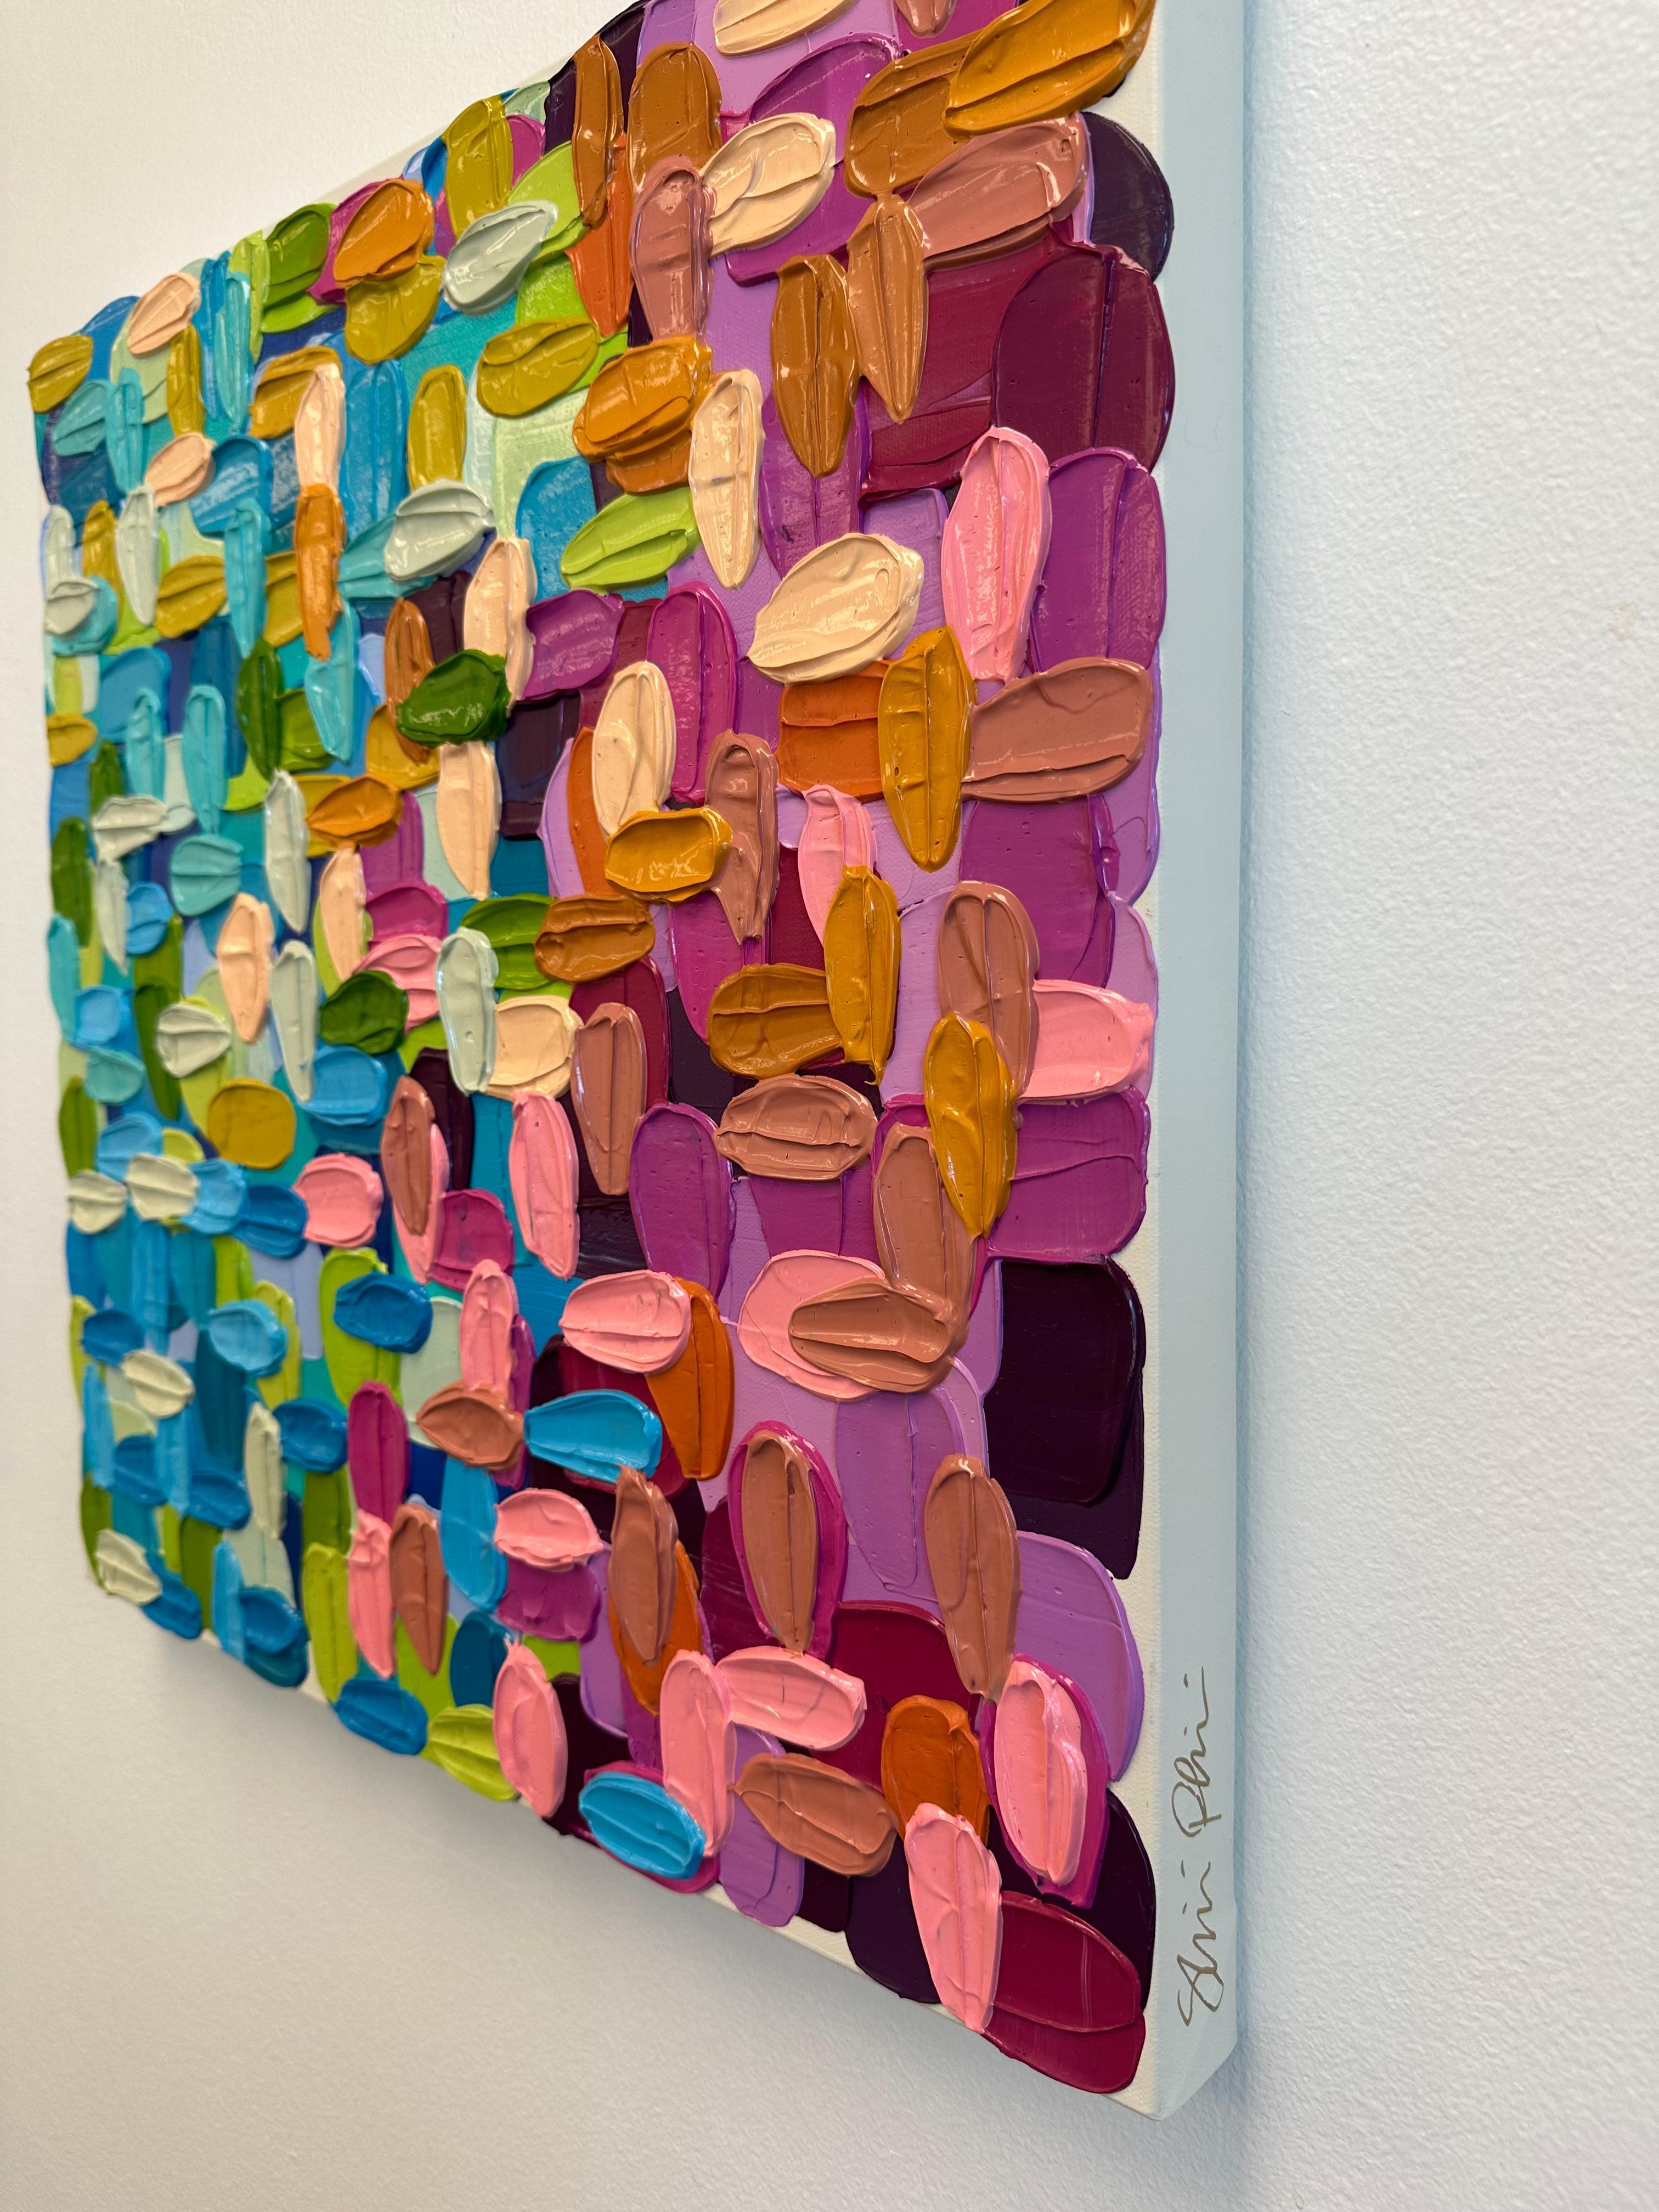 Sommer – Pixeliertes, farbenfrohes Arcylic-Gemälde (Abstrakter Expressionismus), Painting, von Shiri Phillips